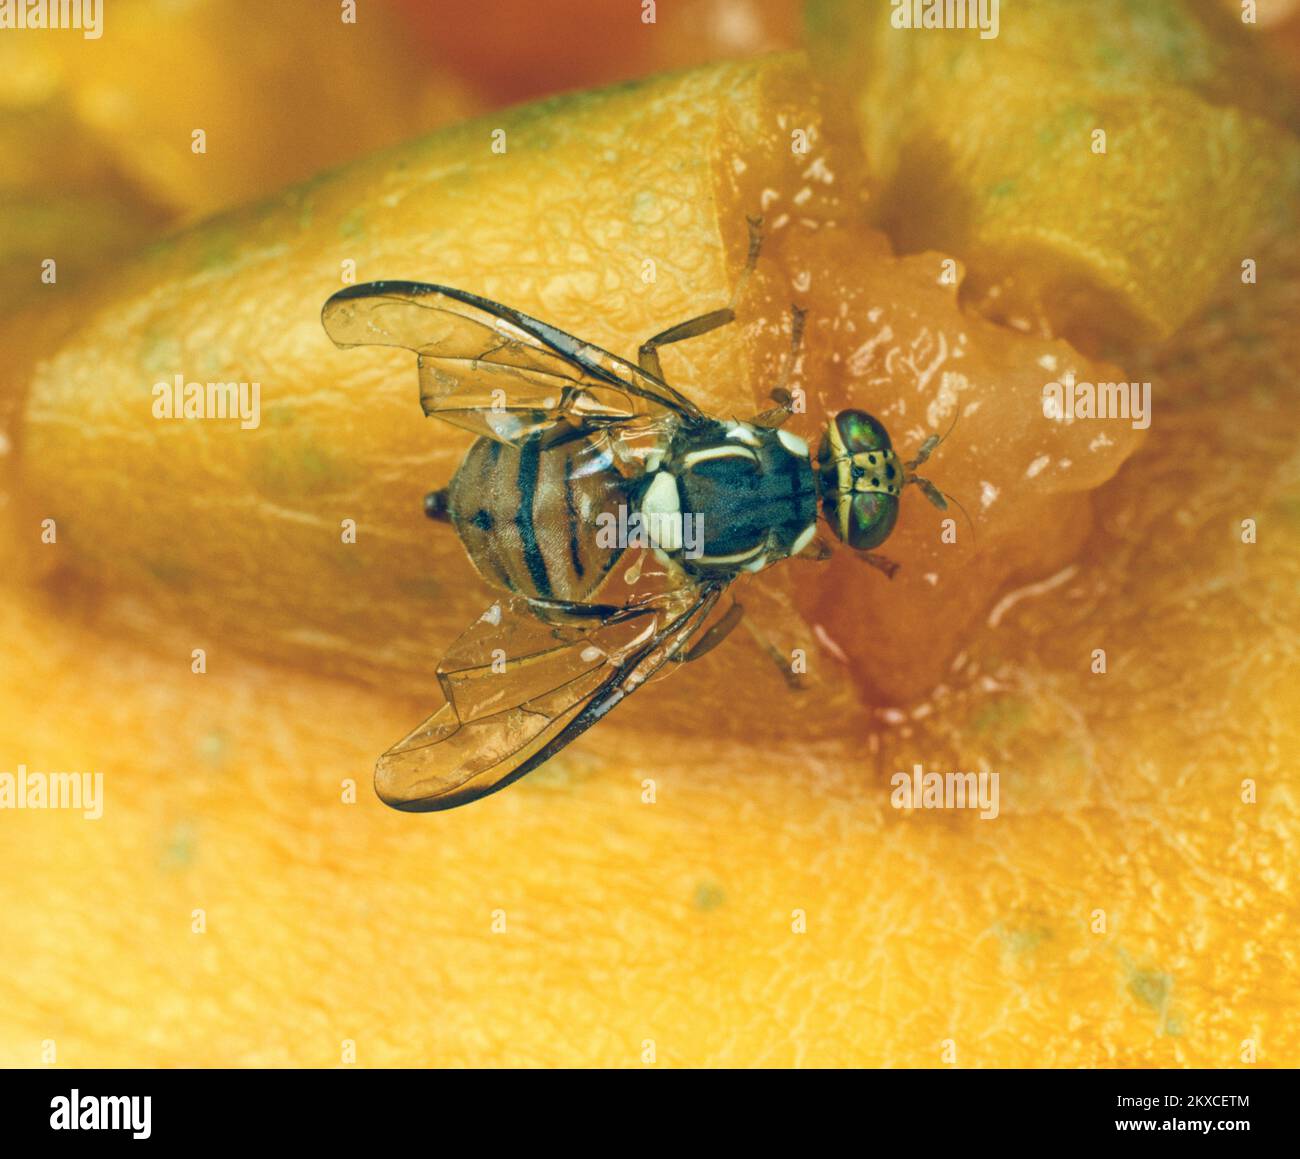 Mosca oriental de la fruta (Bactrocera dorsalis) plaga de la mosca adulta en la superficie de una fruta de papaya Foto de stock